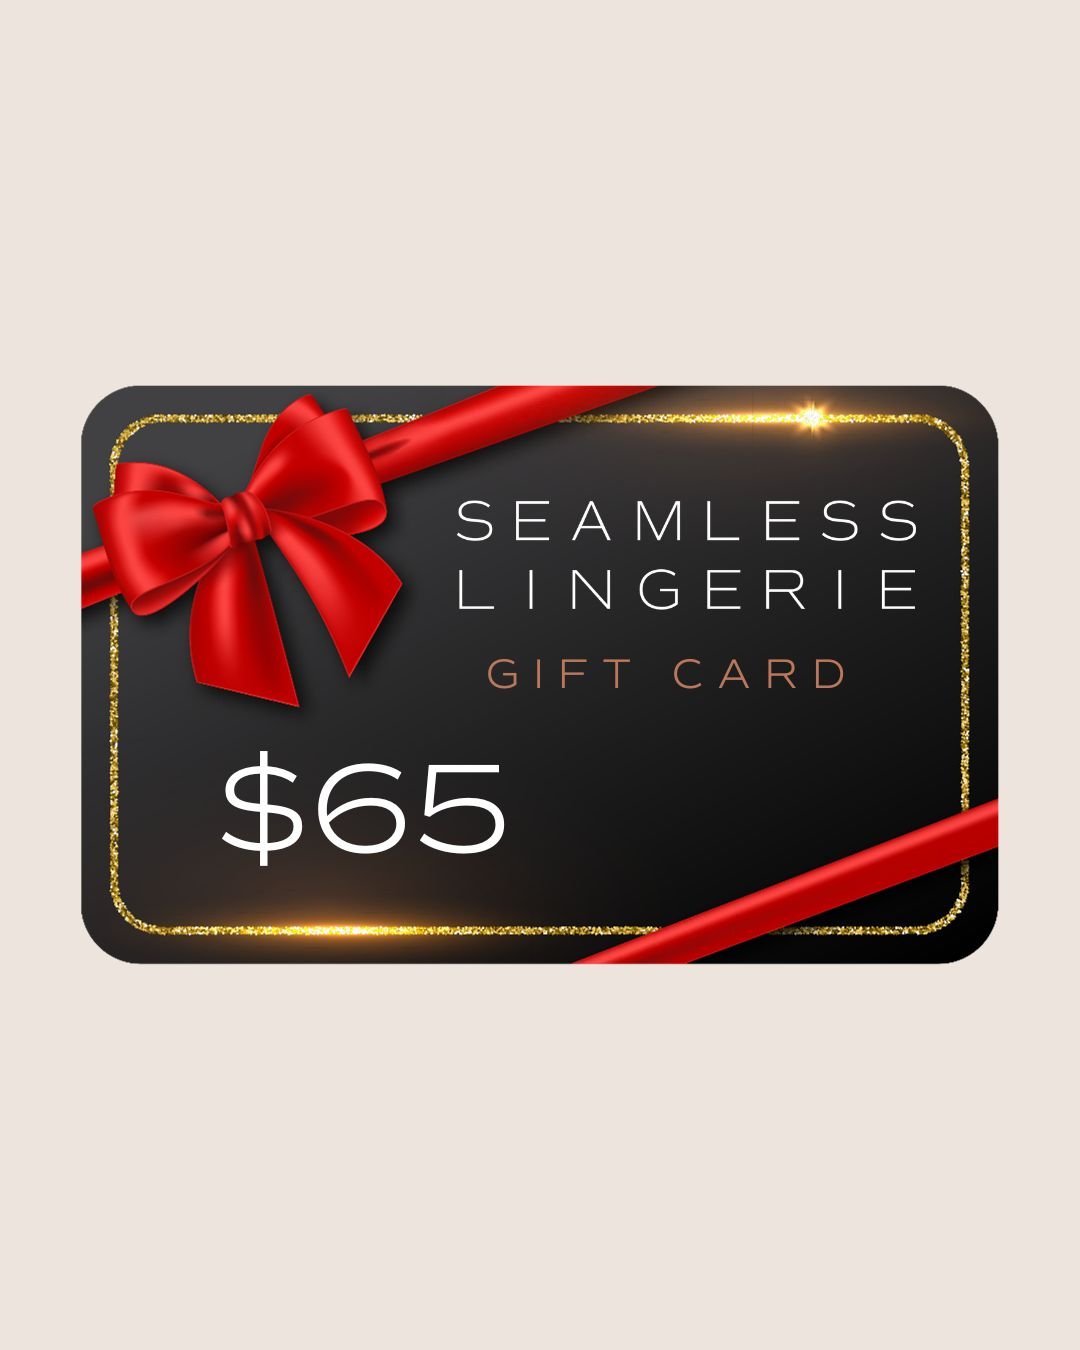 Seamless Lingerie Digital Gift Card - $65 - Seamless Lingerie